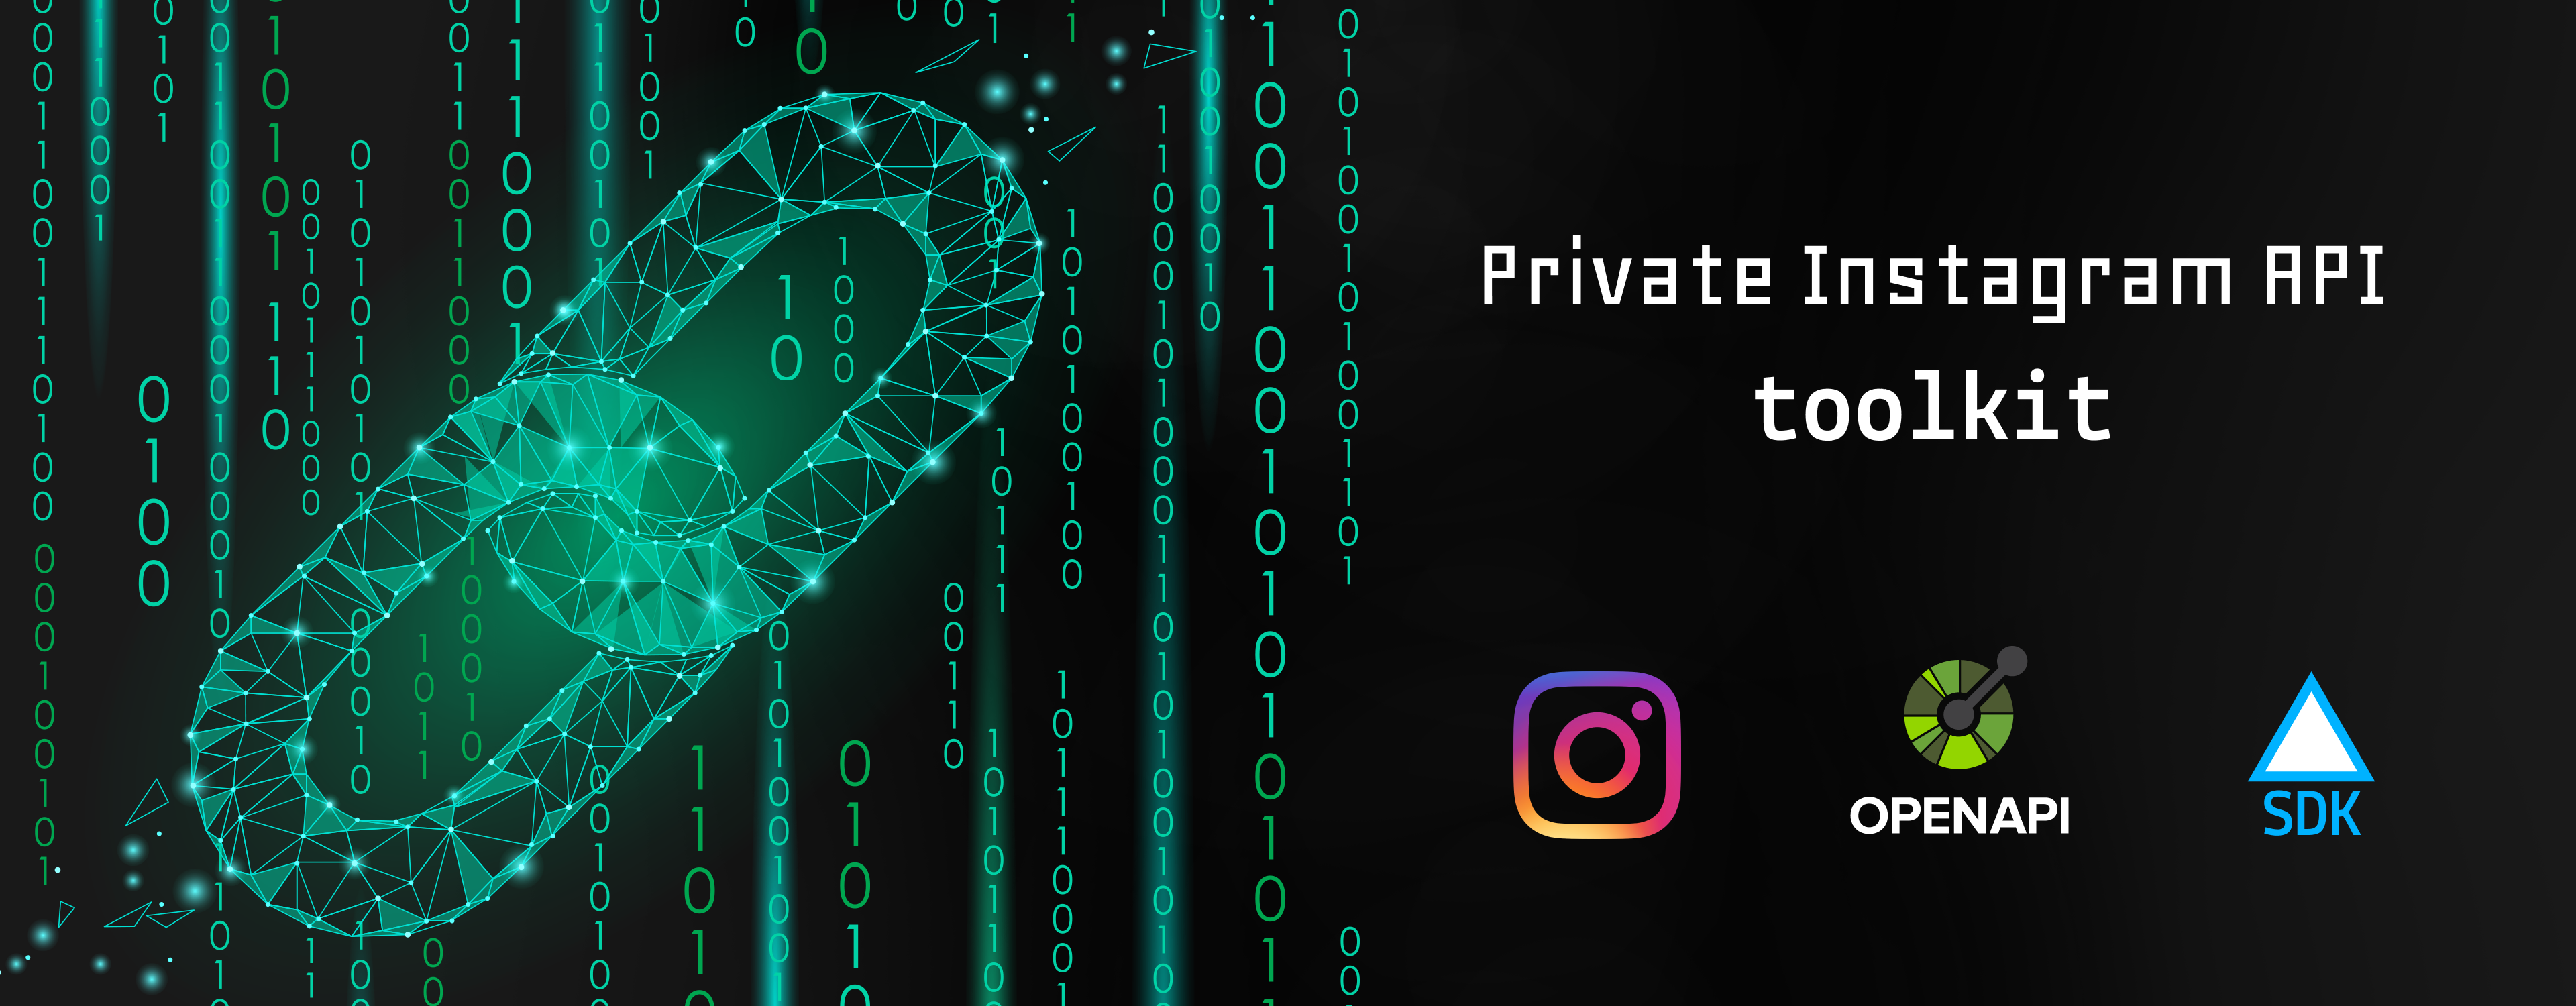 Private Instagram API toolkit